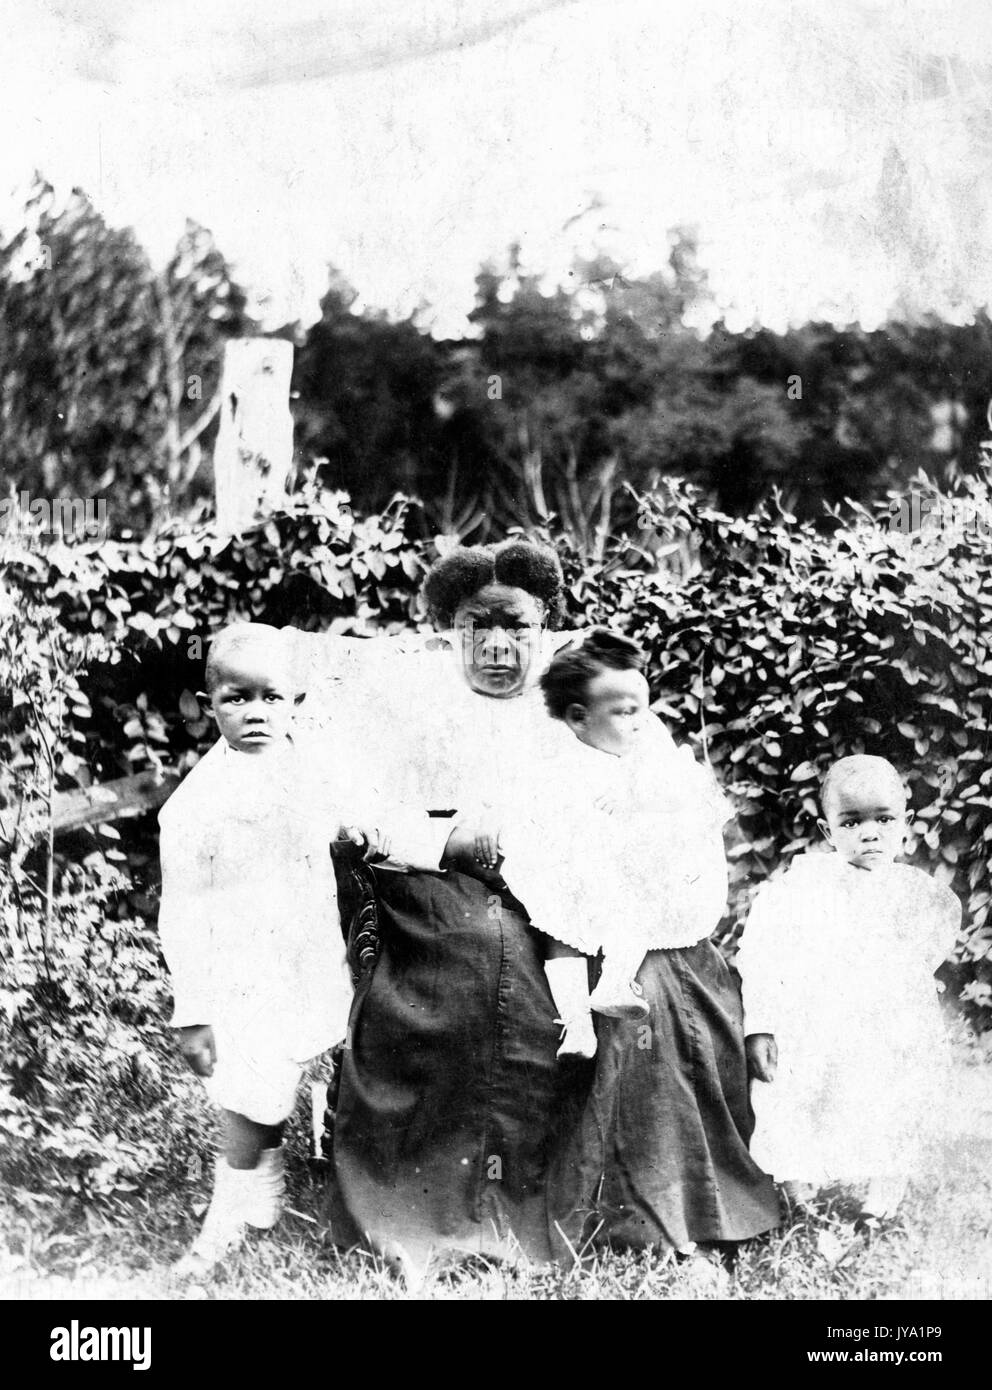 Nonna afro-americana seduta e tenendo uno su tre nipoti, gli altri due nipoti sono ai suoi lati, sono seduti e in piedi davanti a cespugli, i bambini indossano abiti di colore chiaro e la nonna indossa una camicia di colore chiaro e una gonna lunga di colore scuro, 1920. Foto Stock